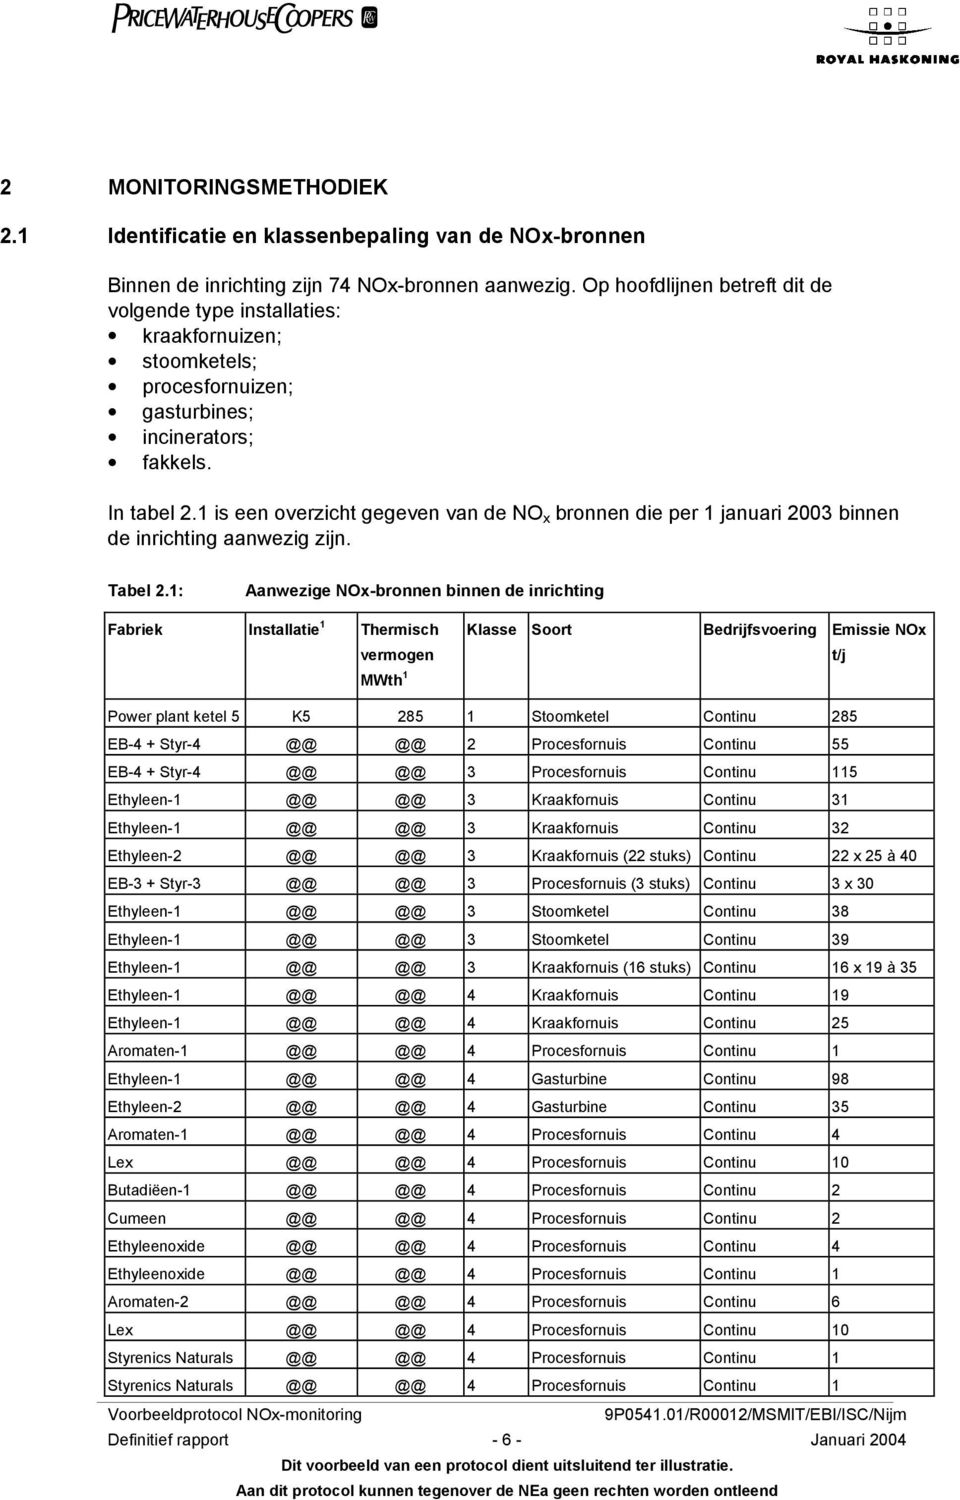 1 is een overzicht gegeven van de NO x bronnen die per 1 januari 2003 binnen de inrichting aanwezig zijn. Tabel 2.